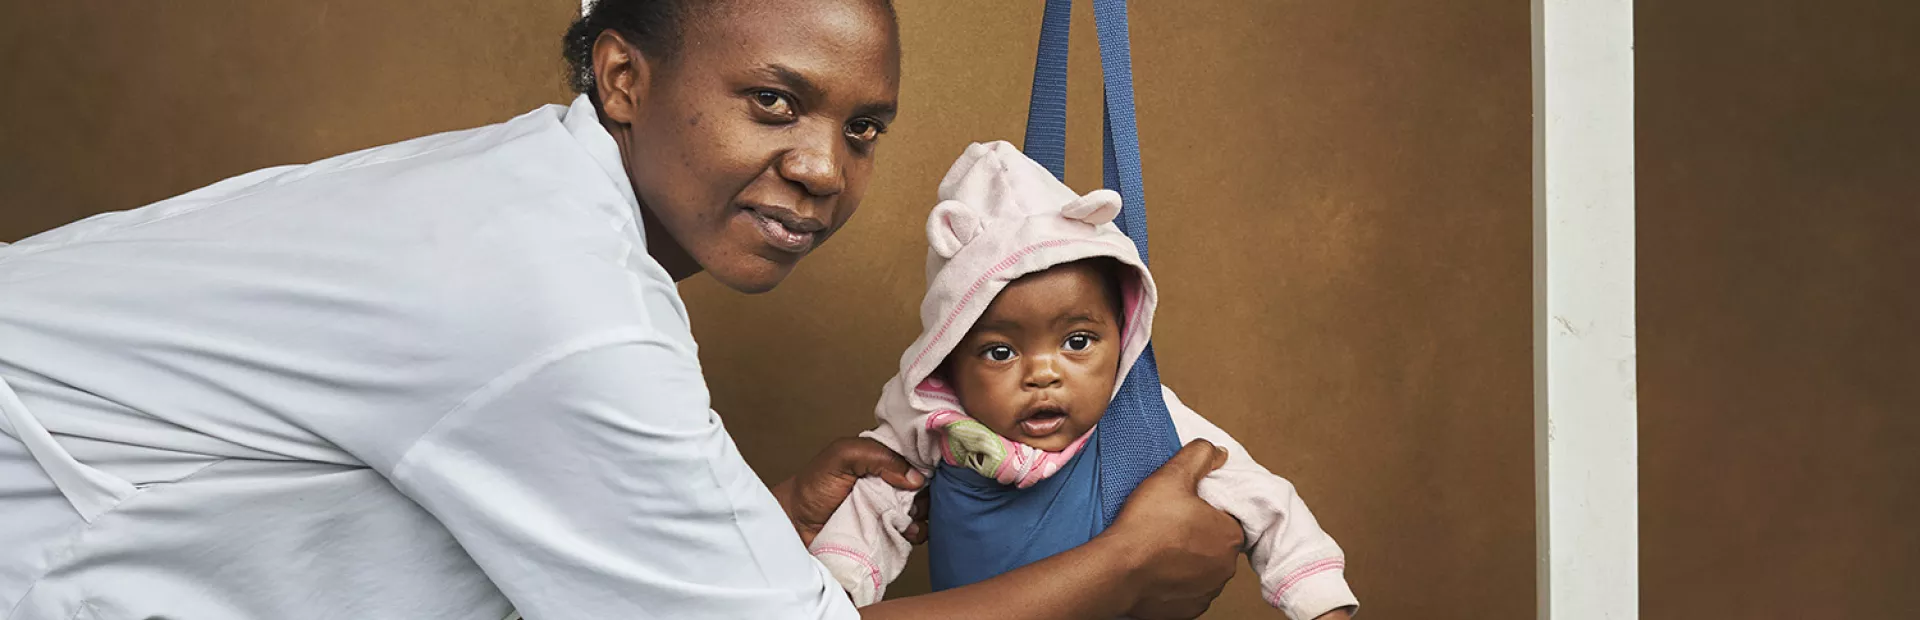 Doctor in Rwanda weighing a baby